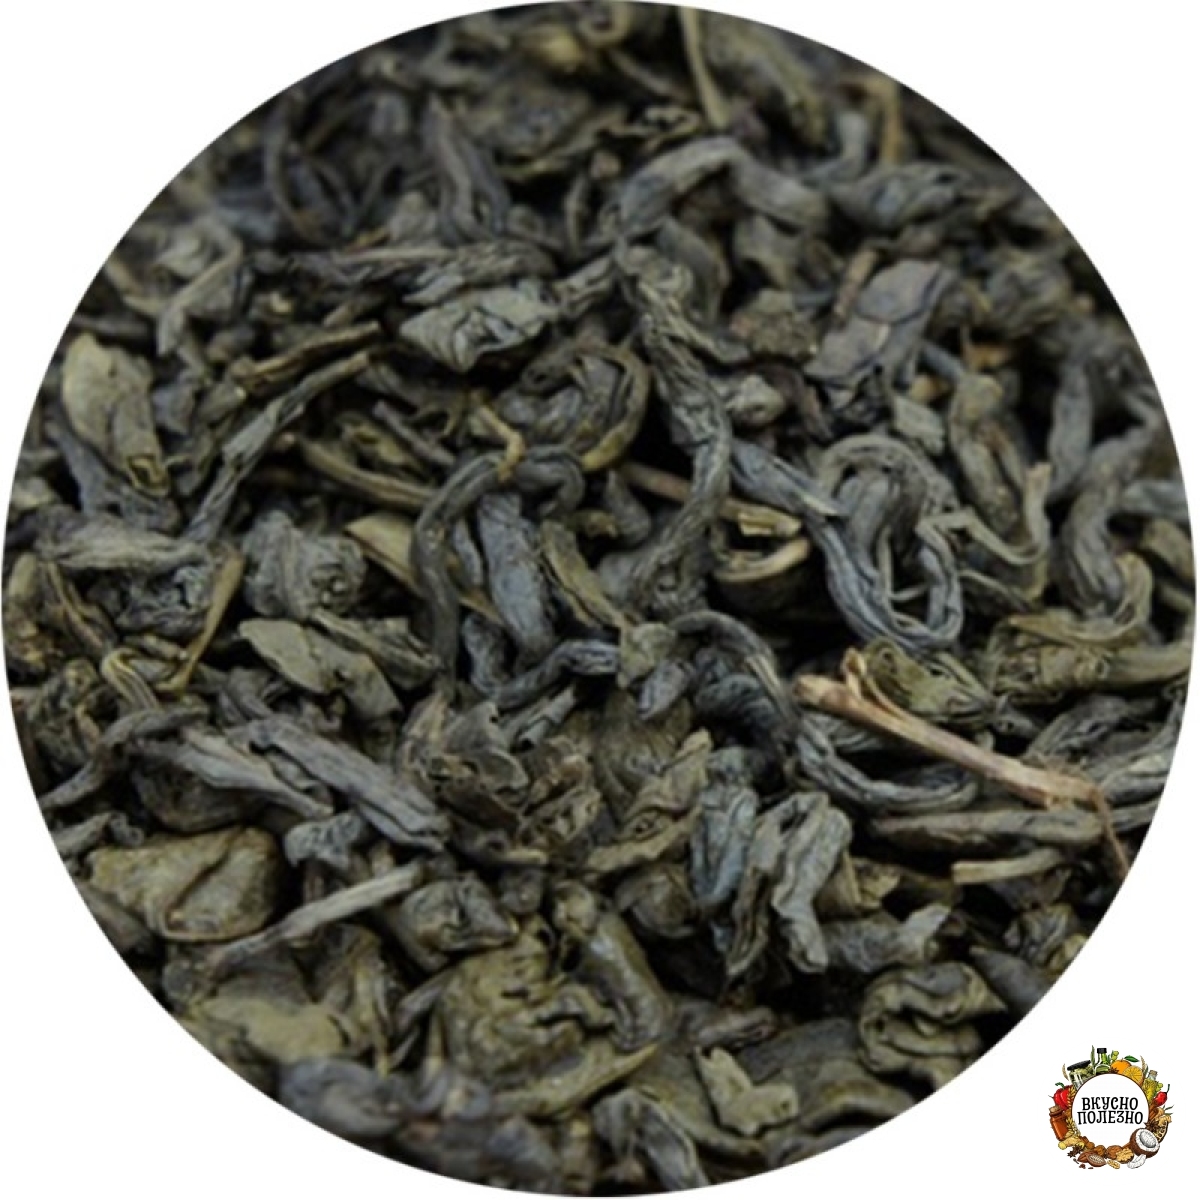 Узбекский чай 95. Кок Чой (узбекский чай 95). Чай зеленый Кок Чой 95. Чай зелёный 95 Узбекистан. Узбекский зелёный чай Кок Чой.